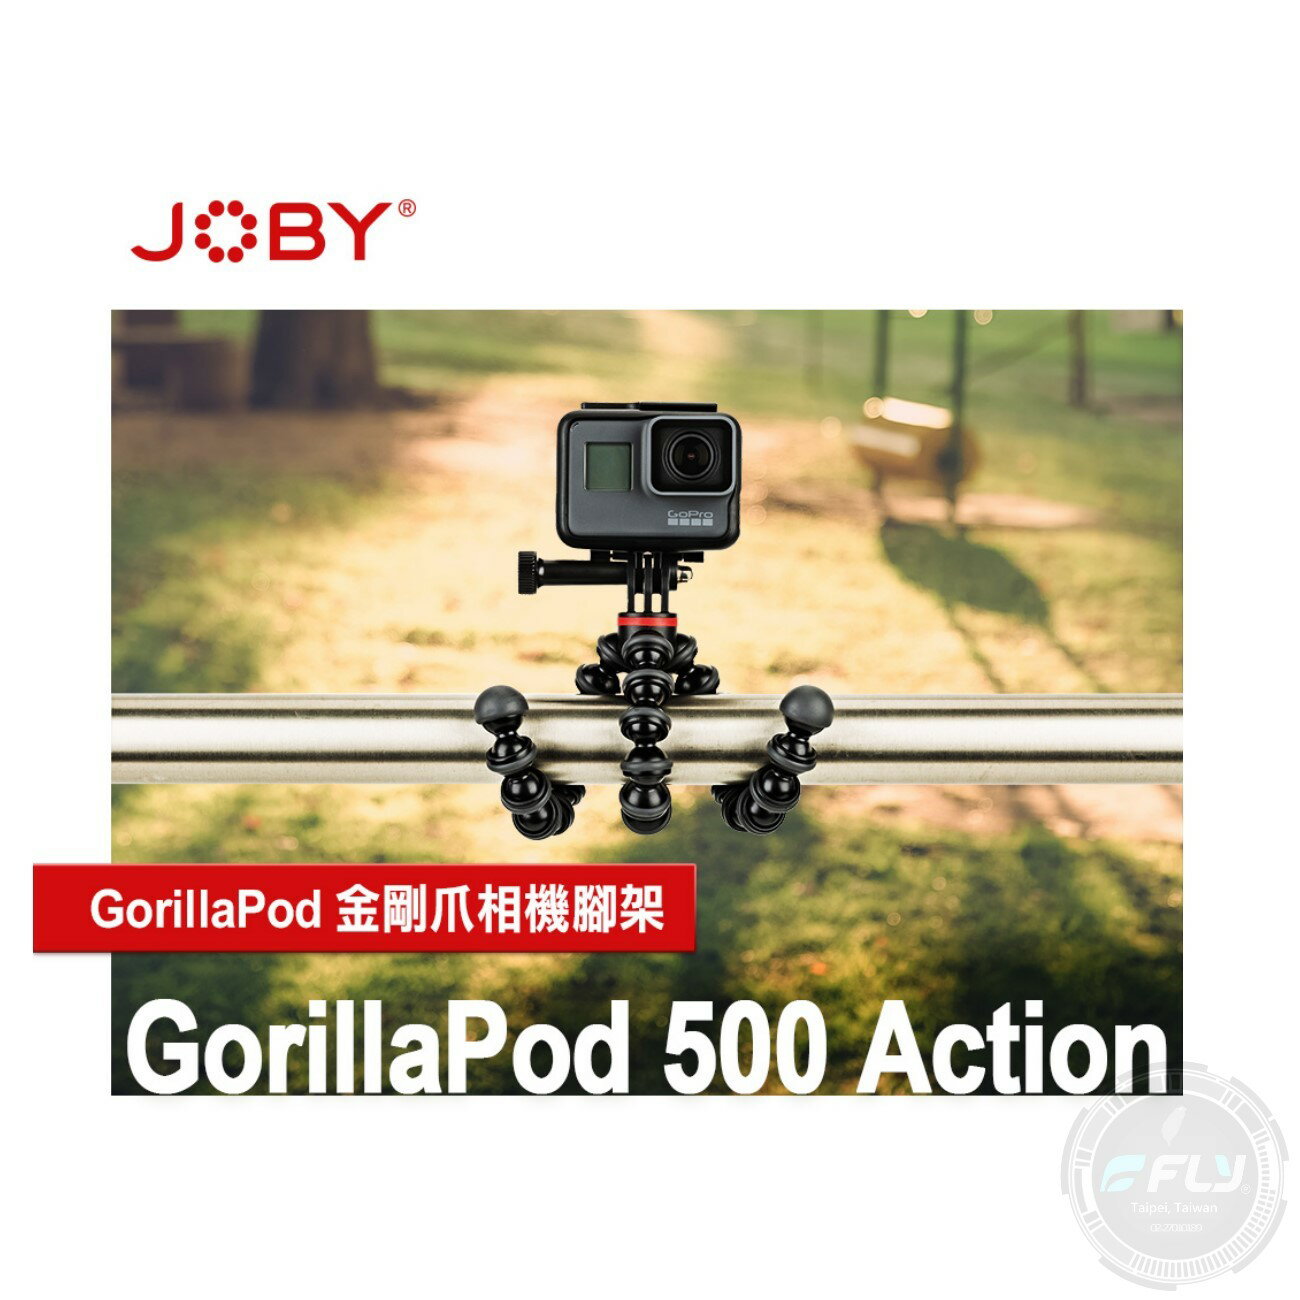 GorillaPod® 500 Action